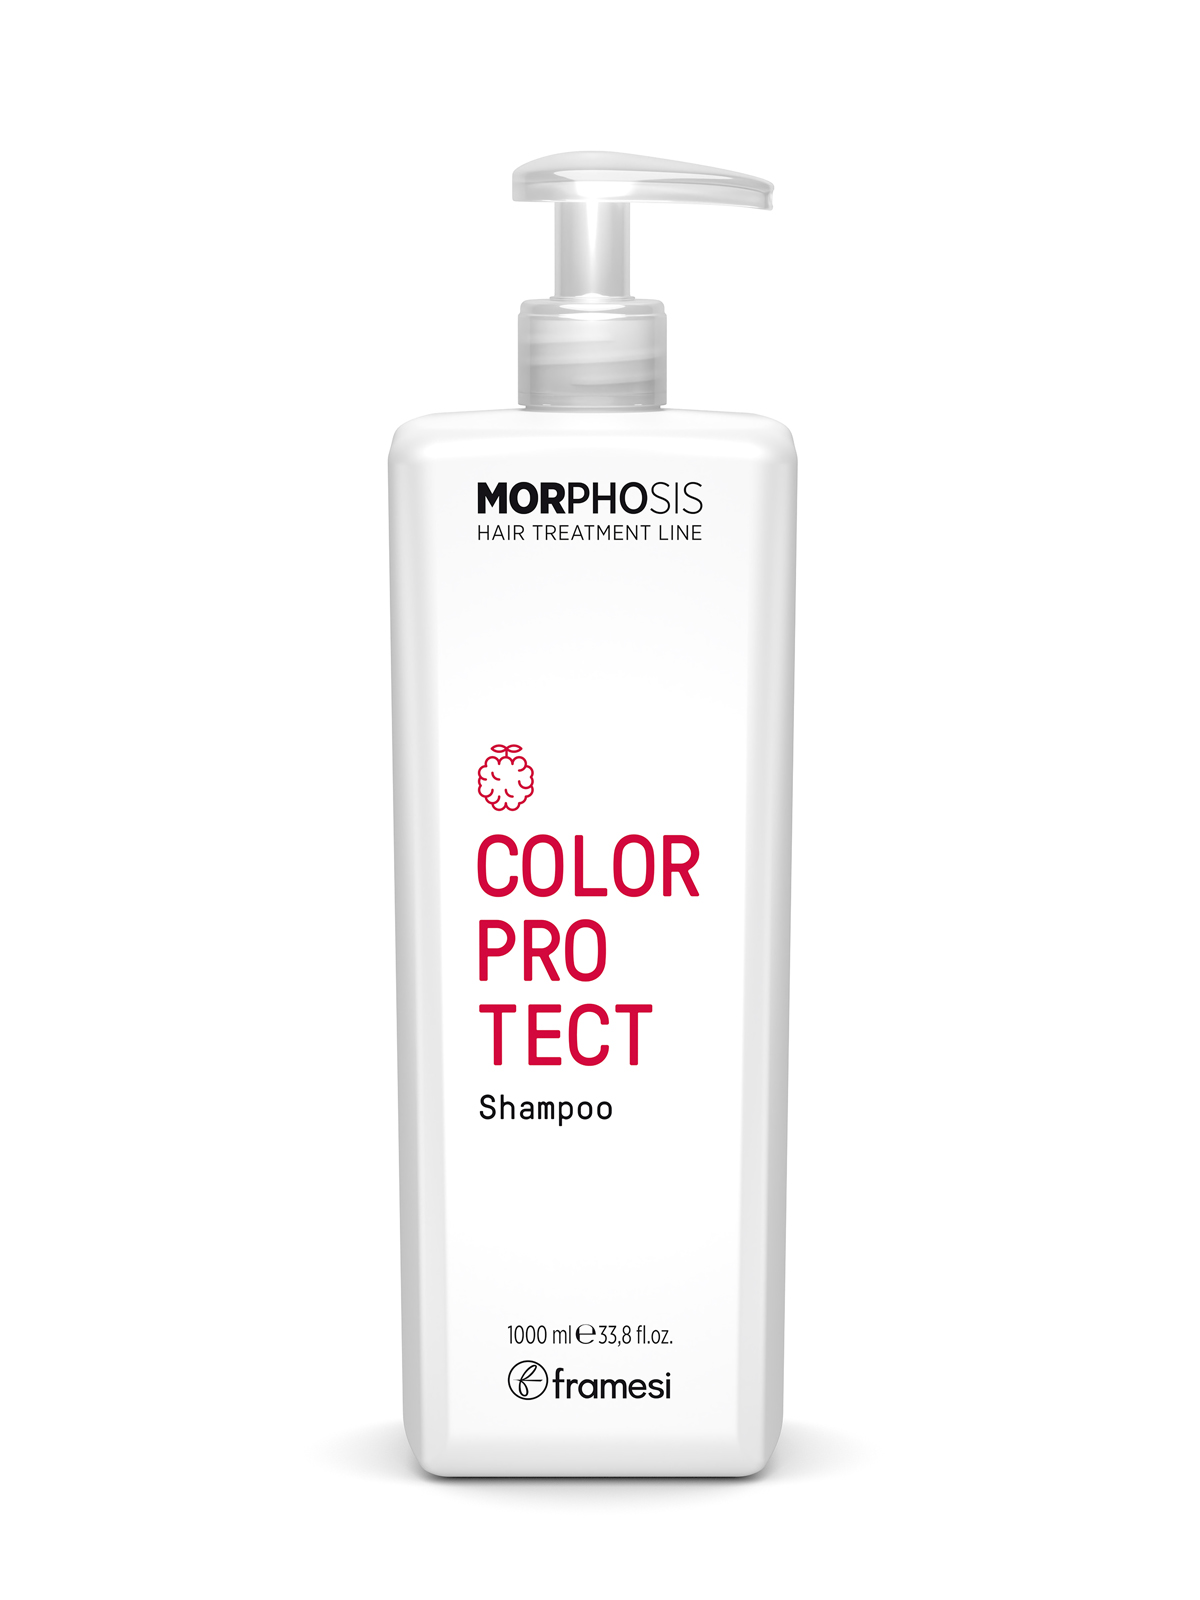 Шампунь Framesi Color protect shampoo для окрашенных волос 1000 мл шампунь для окрашенных в пепельный и седых волос благородство серебра silverati shampoo or184 250 мл